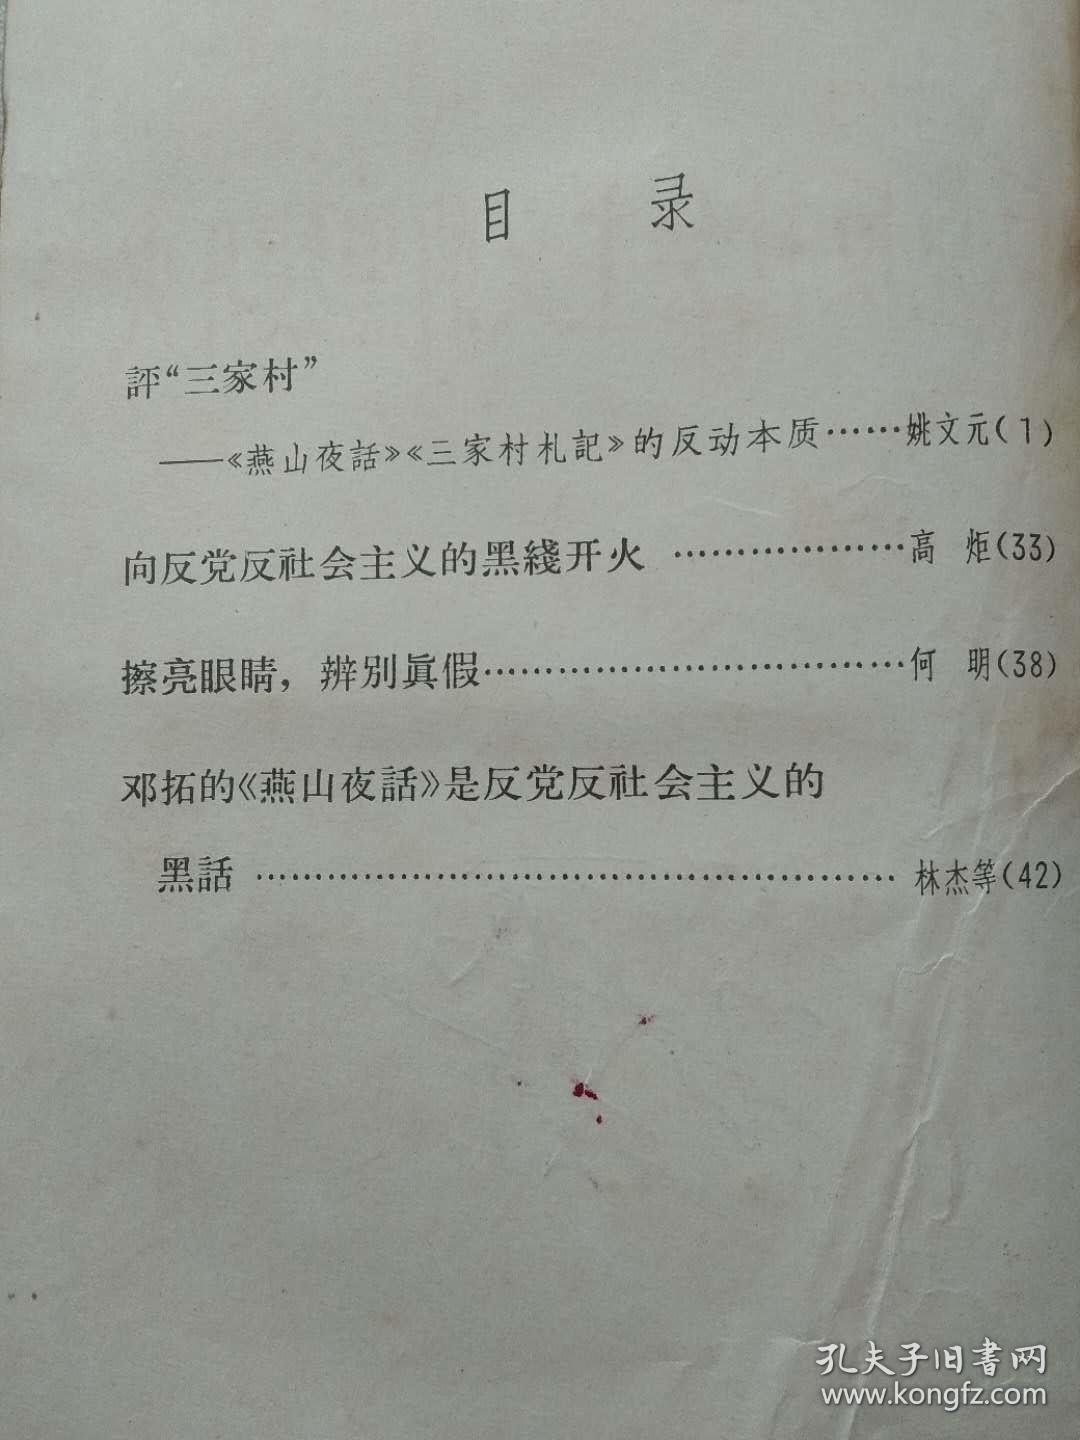 “**”本--向反党反社会主义的黑线开火--姚文元等著。湖南人民出版社。1966年。1版2印。横排繁体字